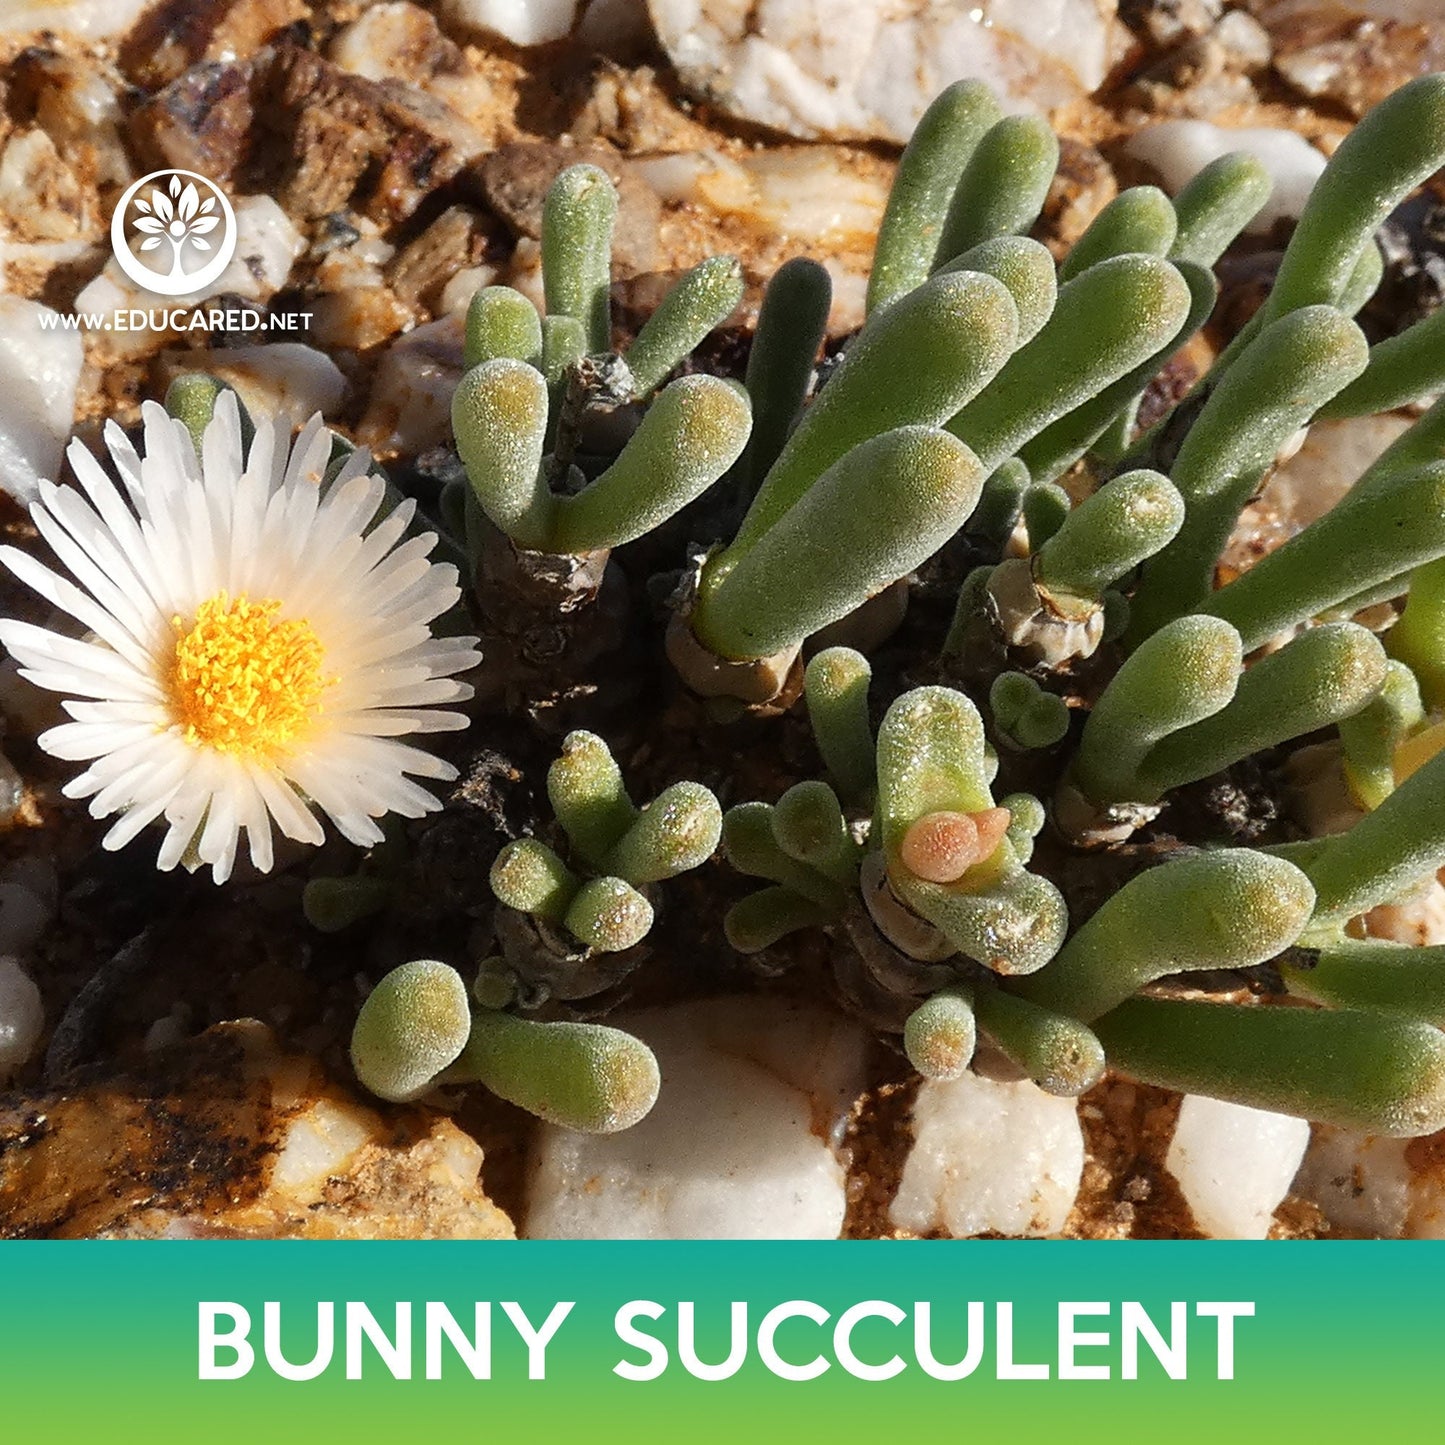 Bunny Succulent Seeds, Monilaria moniliformis